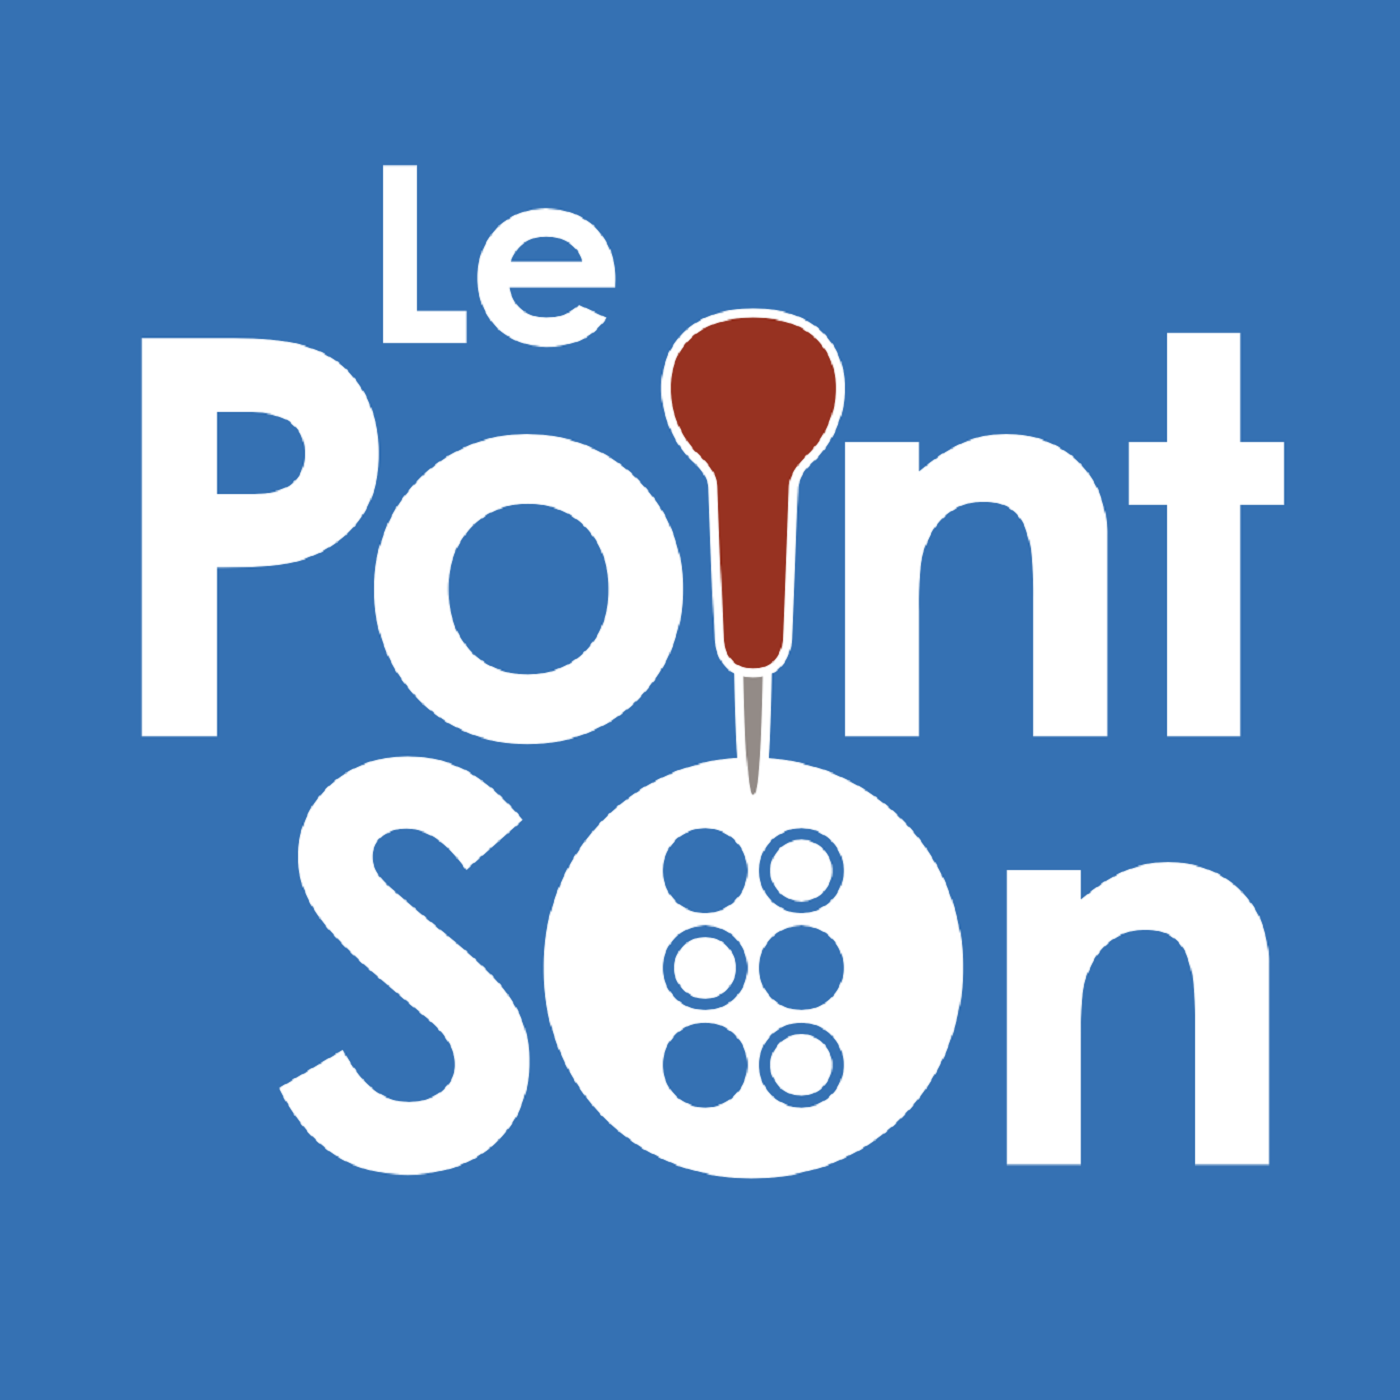 Logo du podcast Le Point Son. On voit le texte Point Son écrit en noir sur fond bleu. Et un micro jaune remplace le I de point.